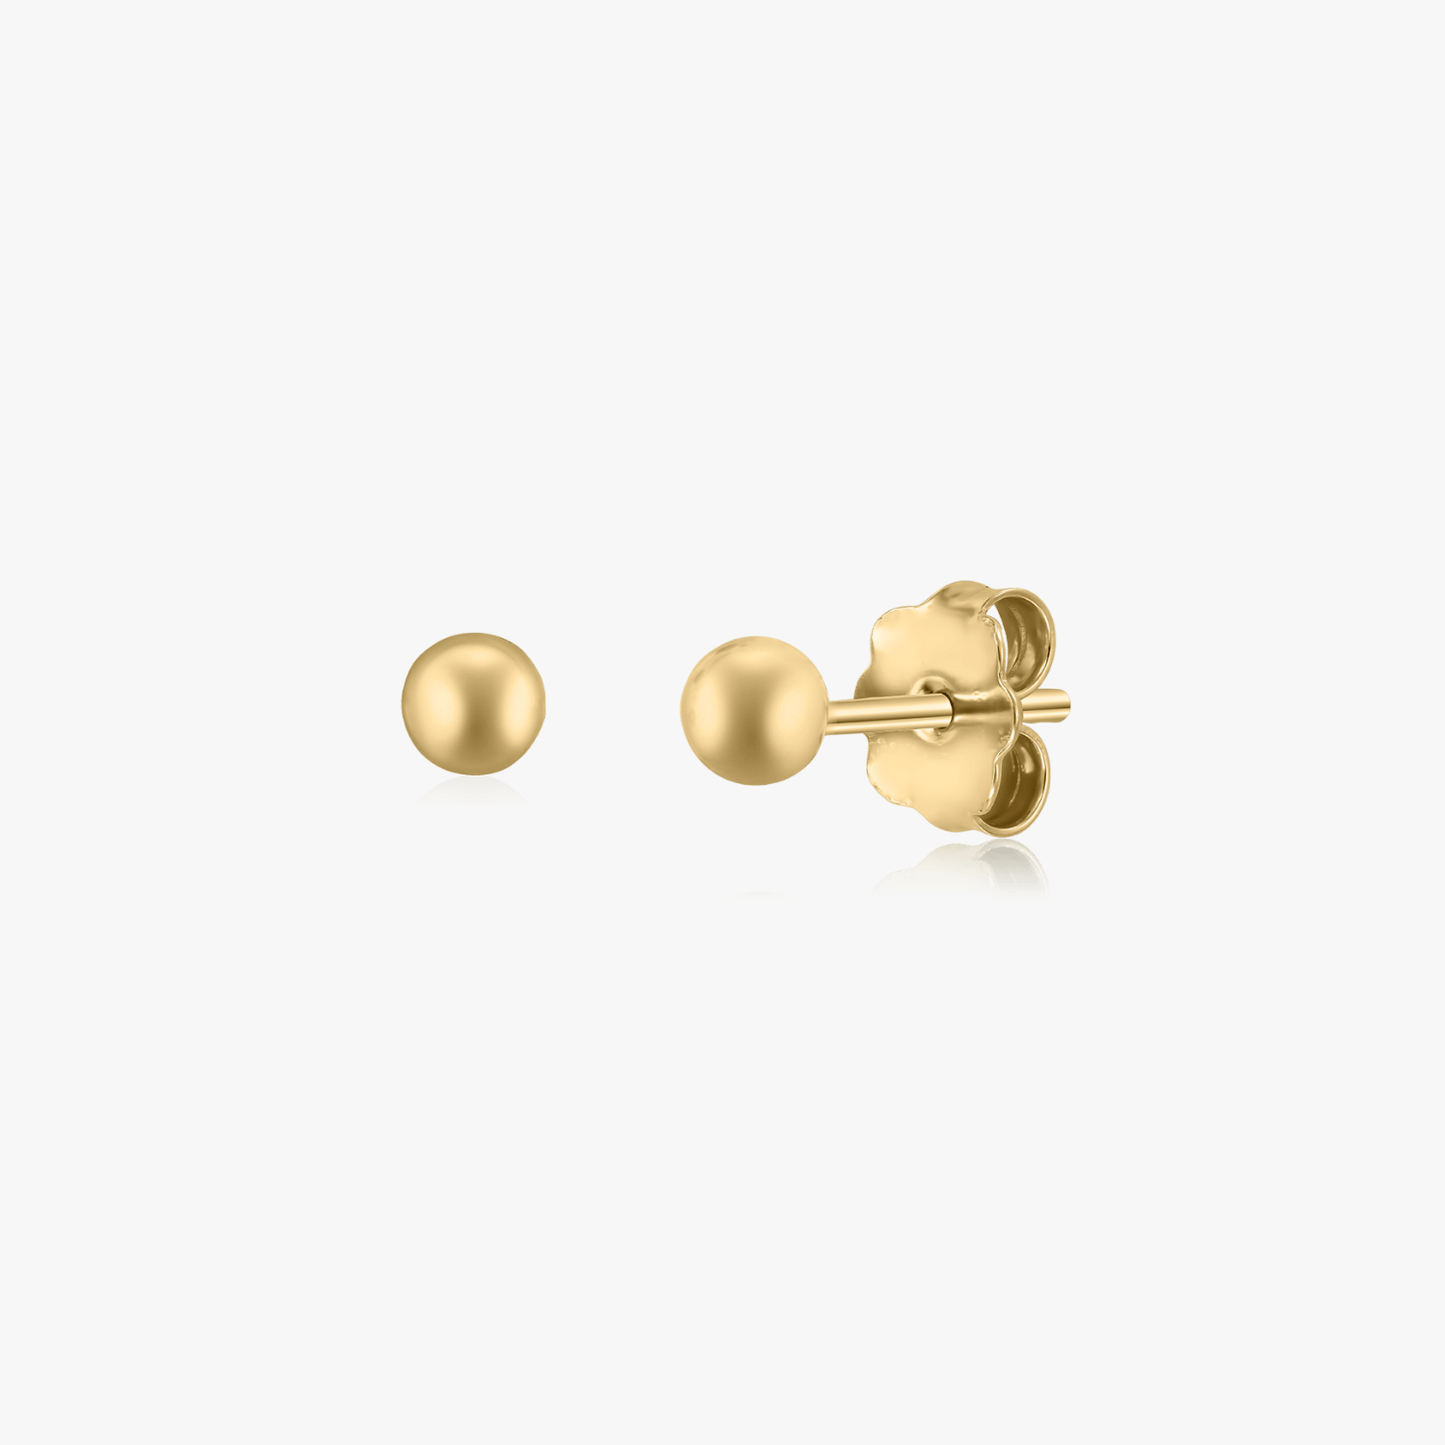 Golden Sphere gold earrings